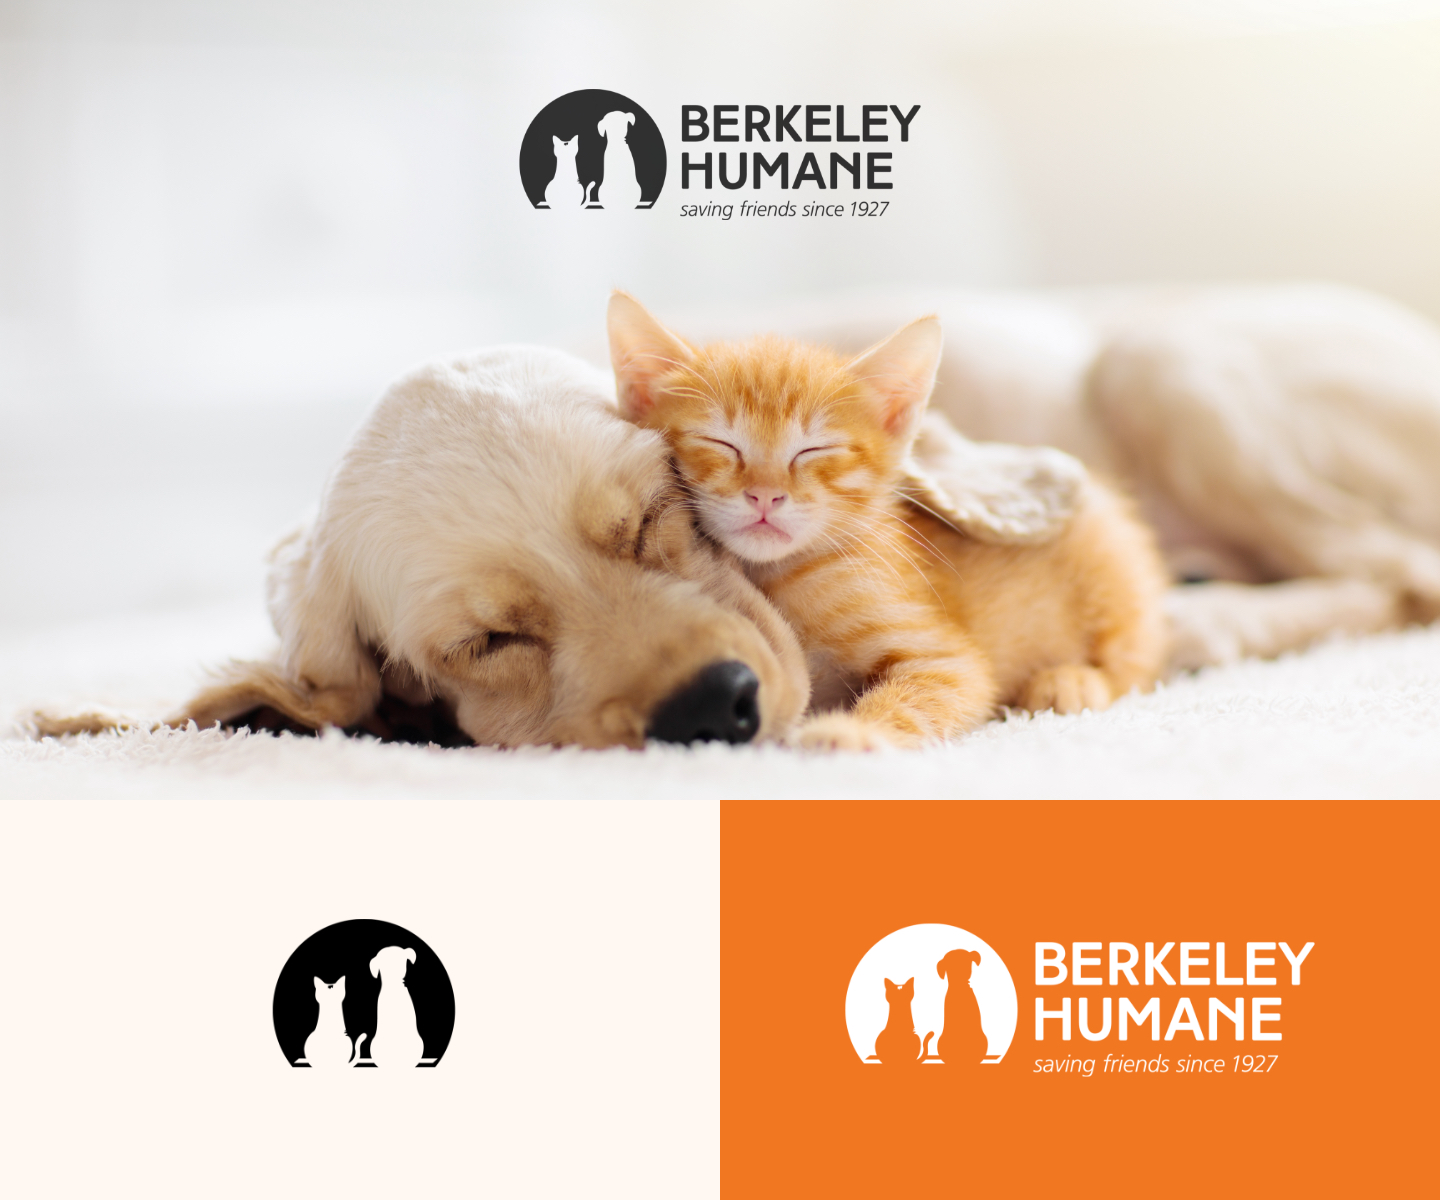 Berkeley_Humane_Logo_Showcase-0001.jpg